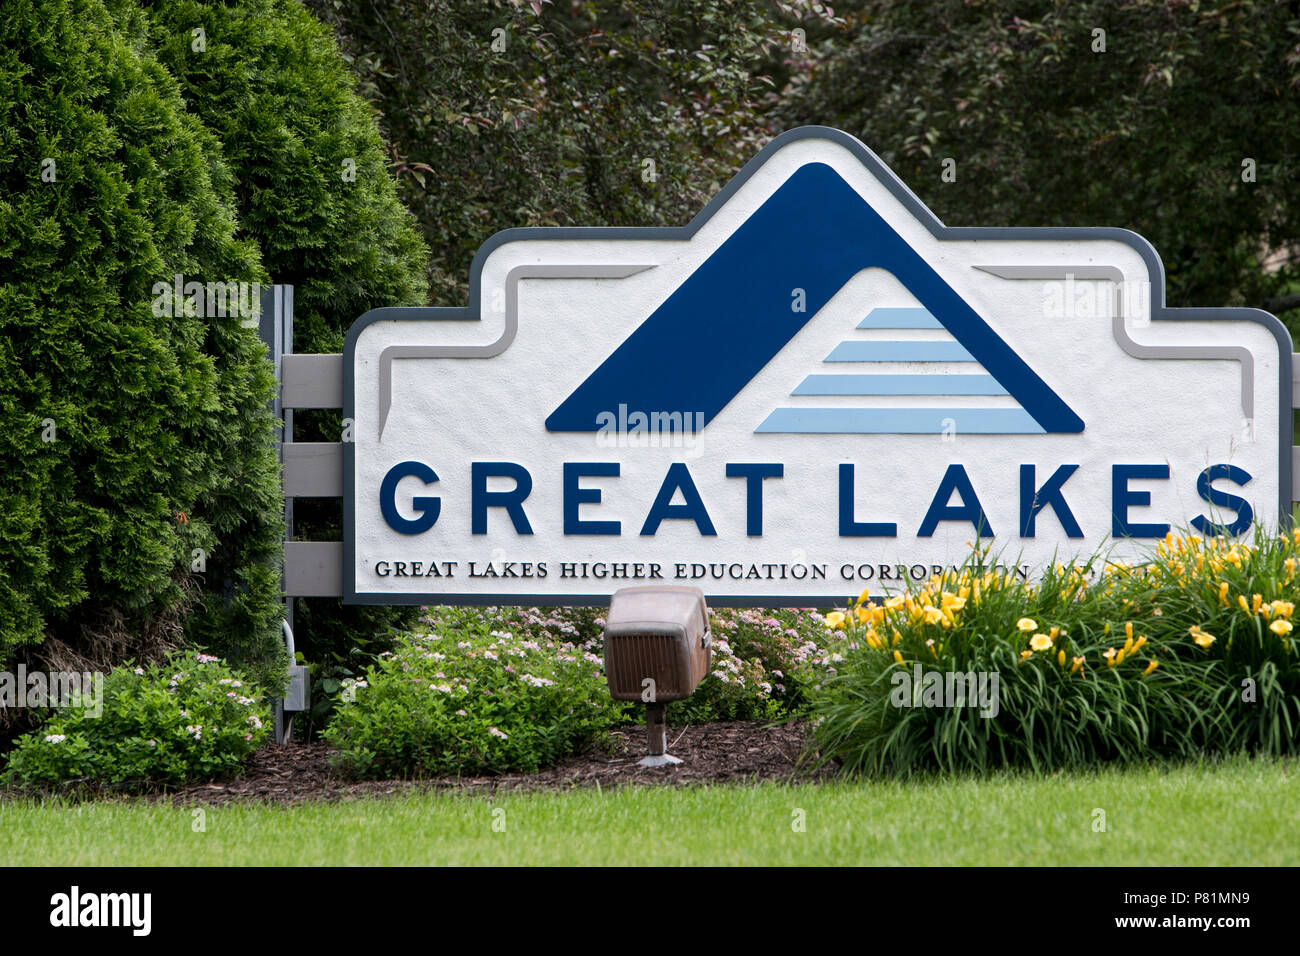 Ein logo Zeichen außerhalb des Hauptquartiers der Großen Seen Hochschulbildung Corporation in Madison, Wisconsin, am 23. Juni 2018. Stockfoto